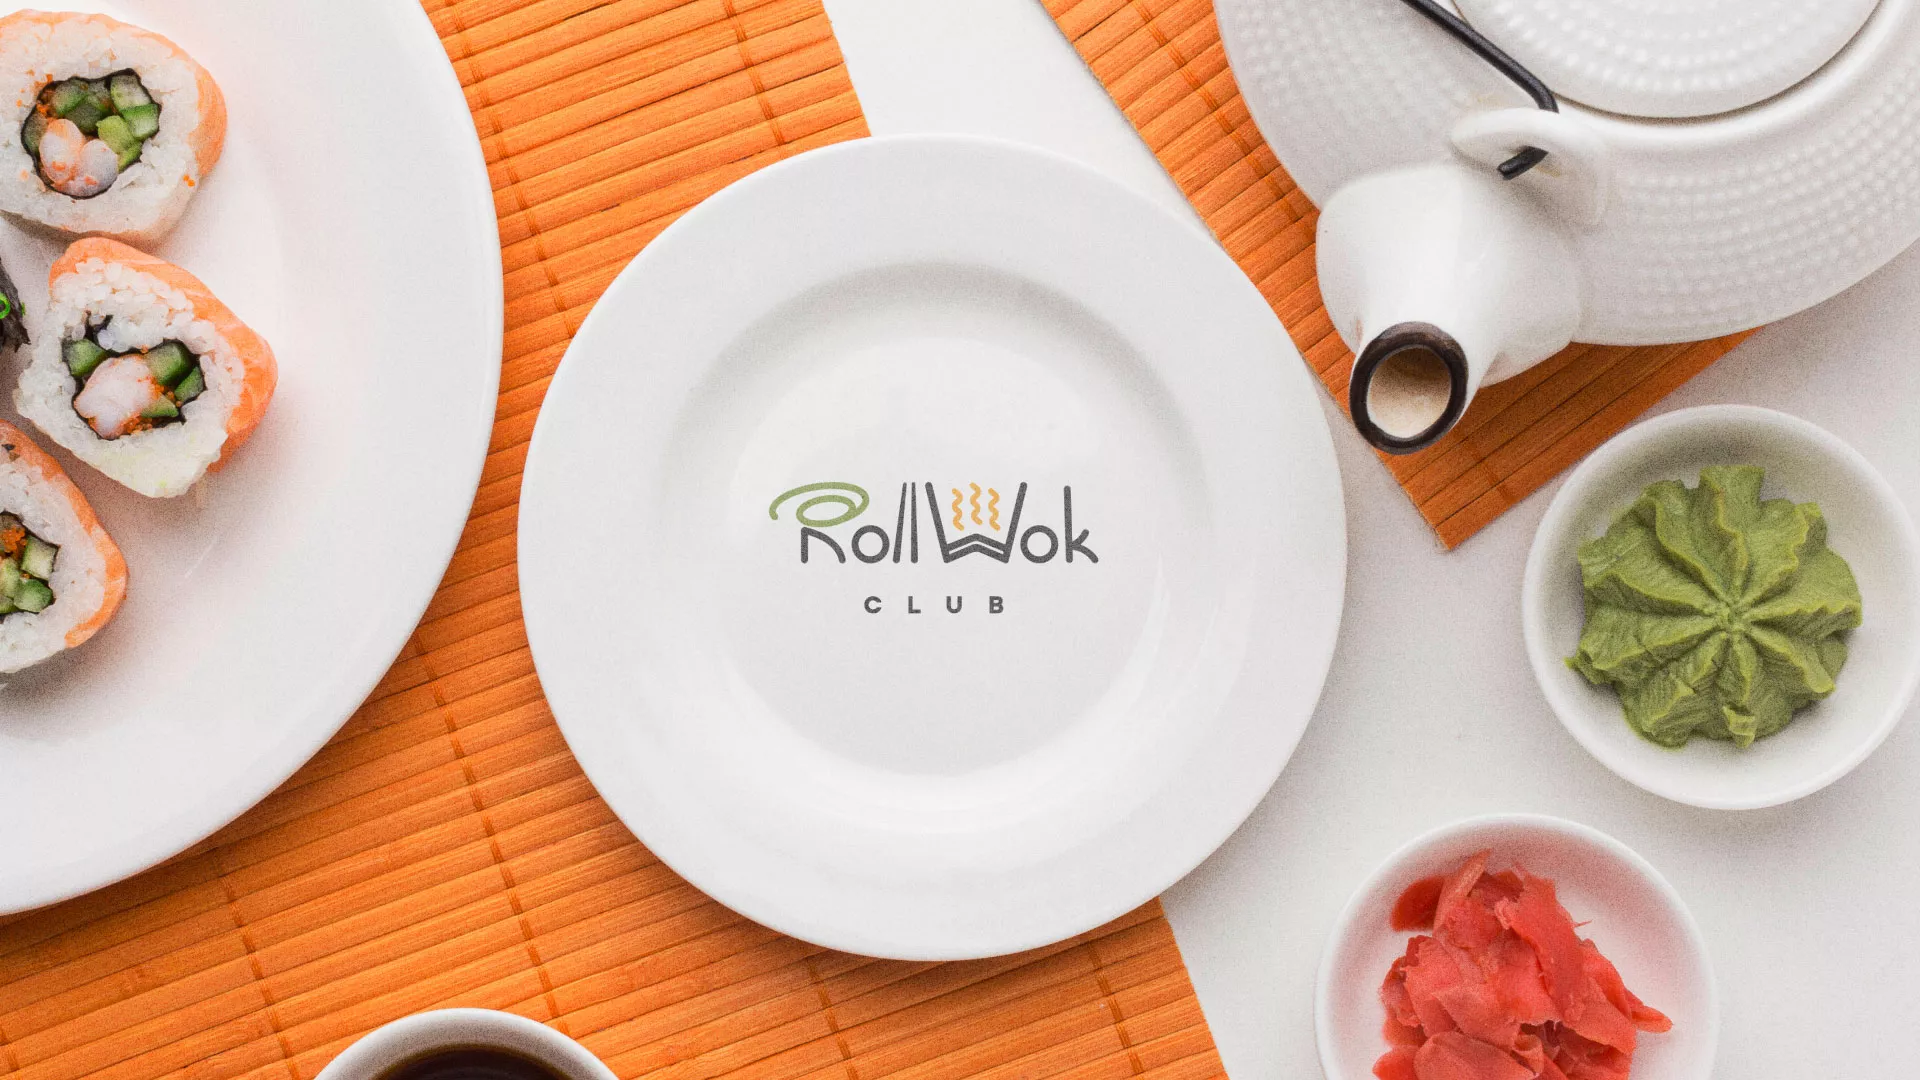 Разработка логотипа и фирменного стиля суши-бара «Roll Wok Club» в Красном Селе